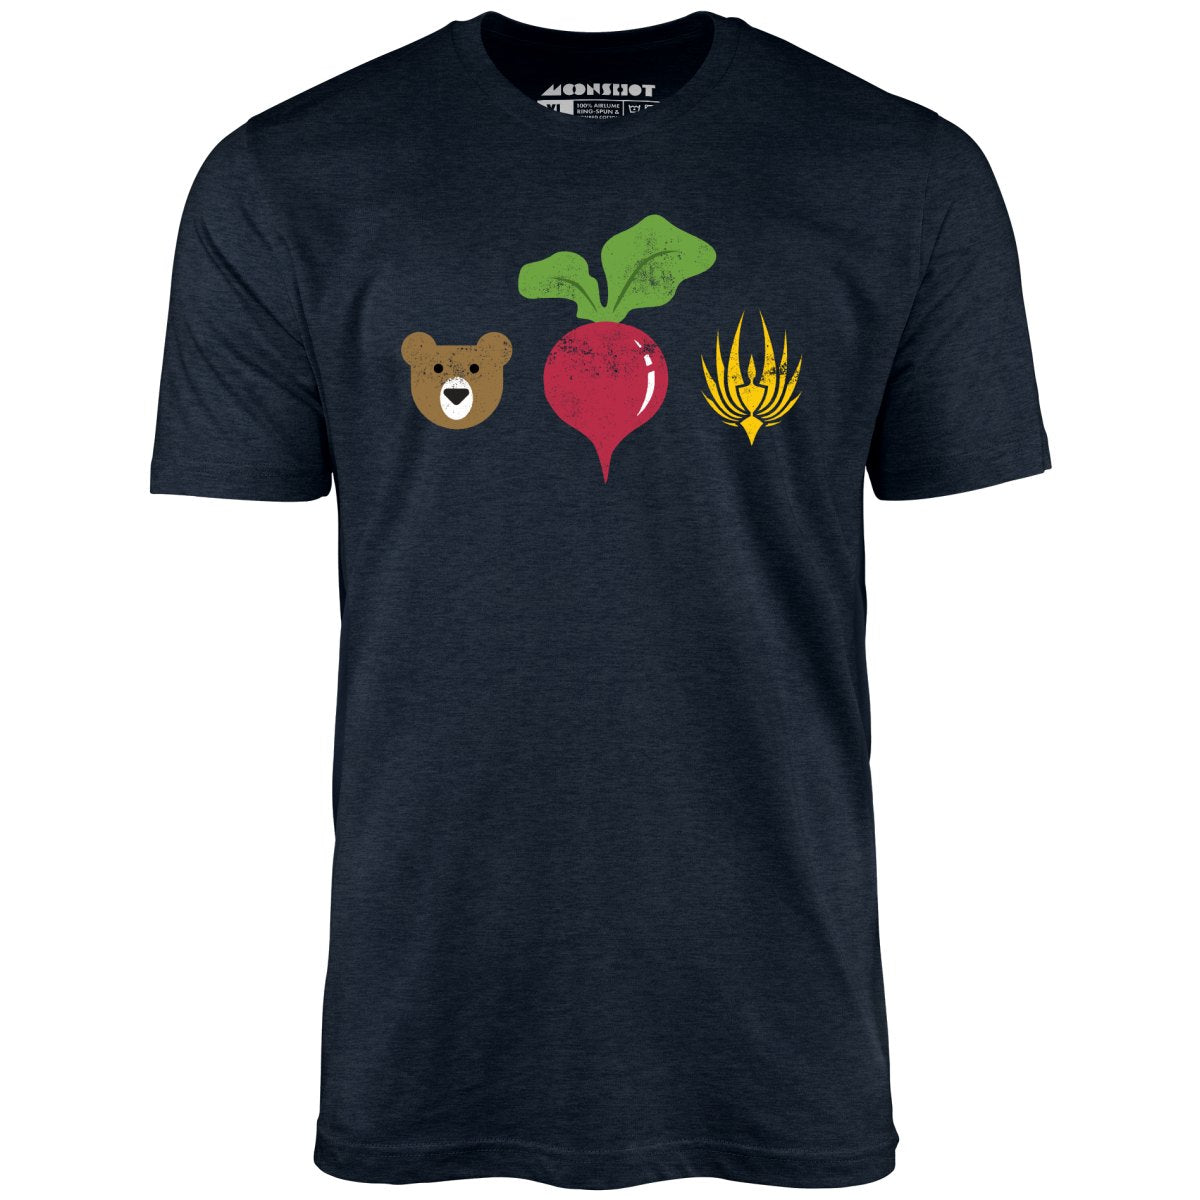 Bears Beets Battlestar Galactica - Unisex T-Shirt